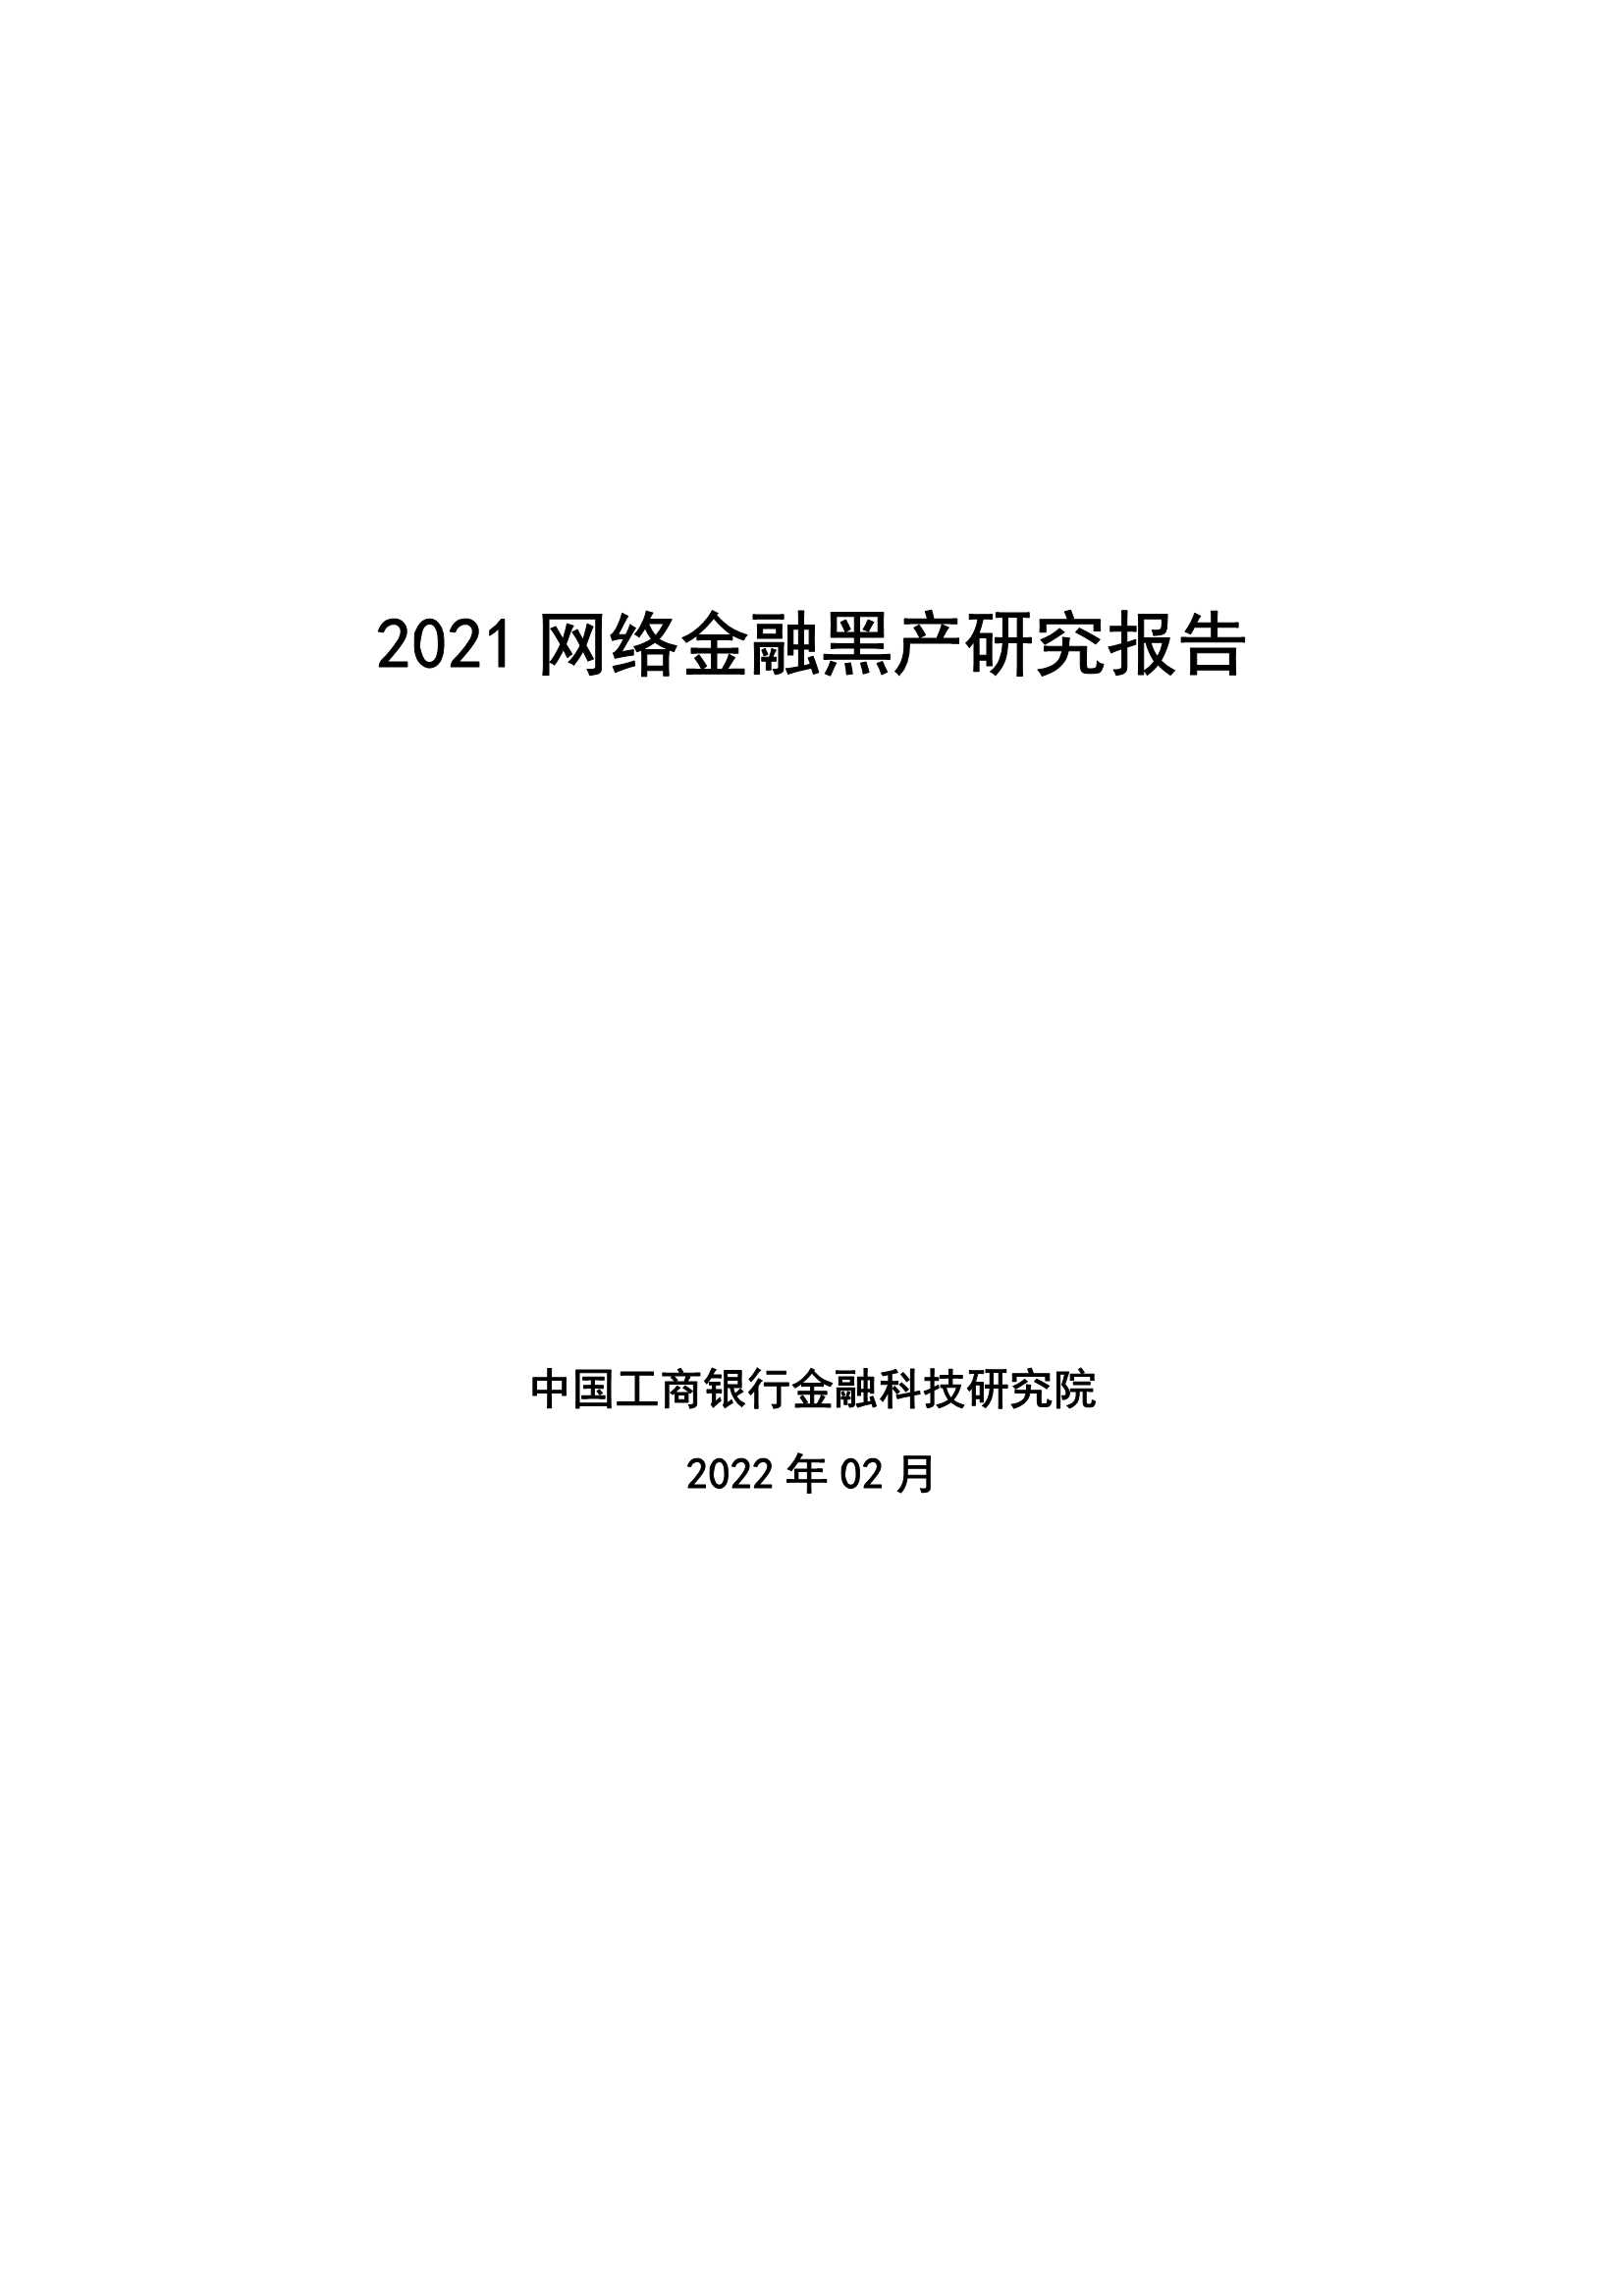 中国工商银行金融科技研究院-2021网络金融黑产研究报告-2022.03-26页